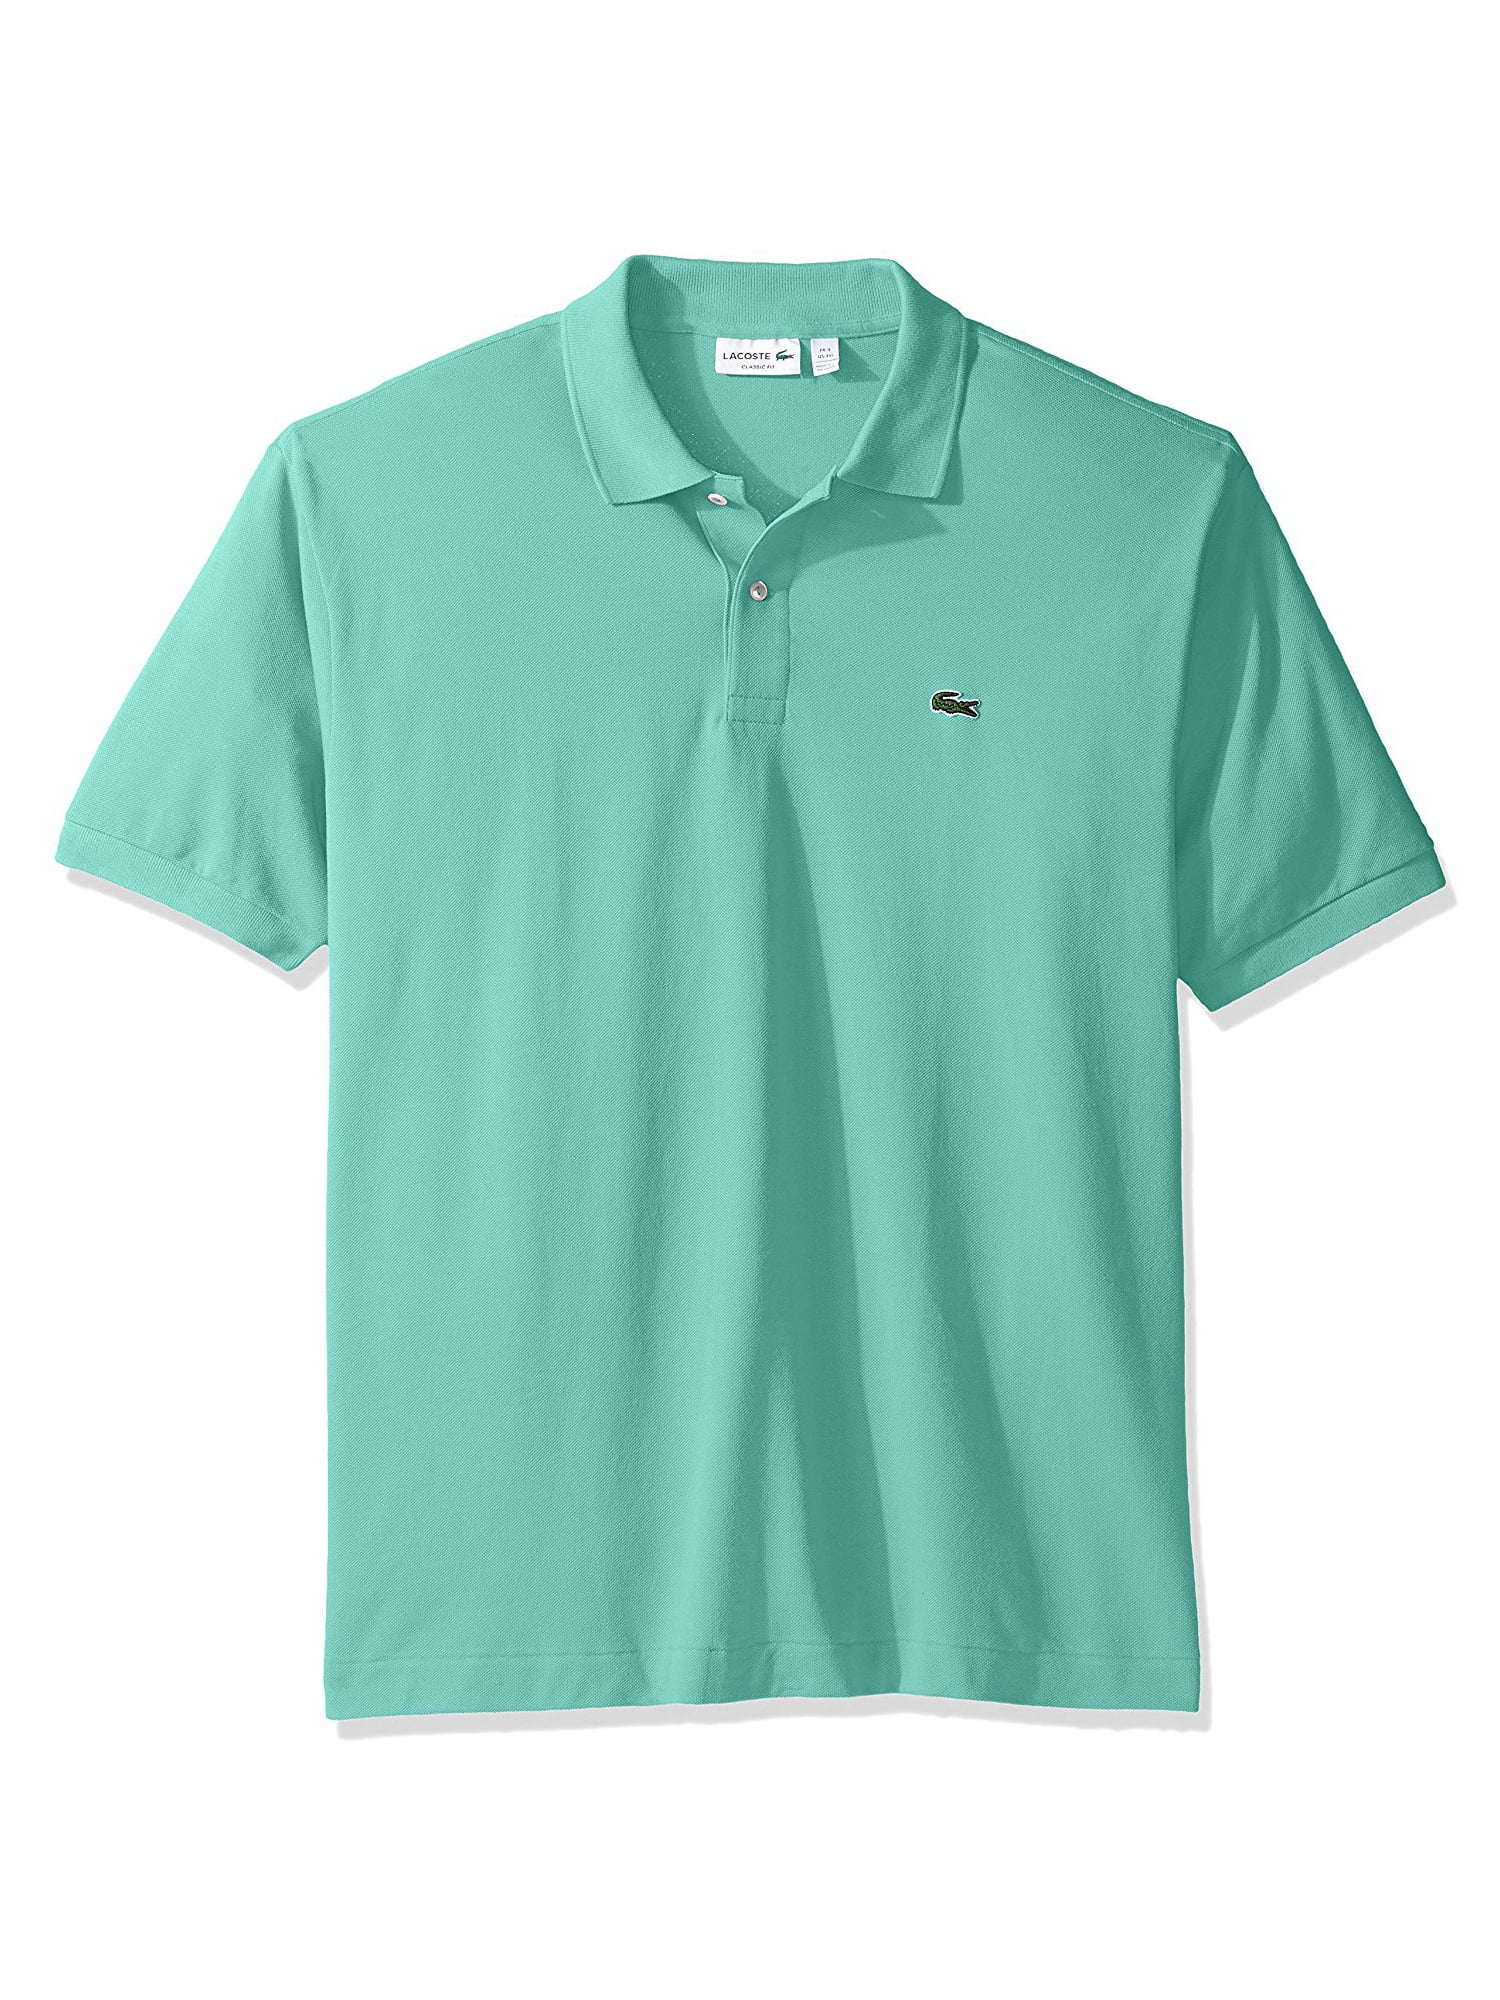 Past Season Lacoste Mens Short Sleeve Pique L.12.12 Classic Fit Polo Shirt